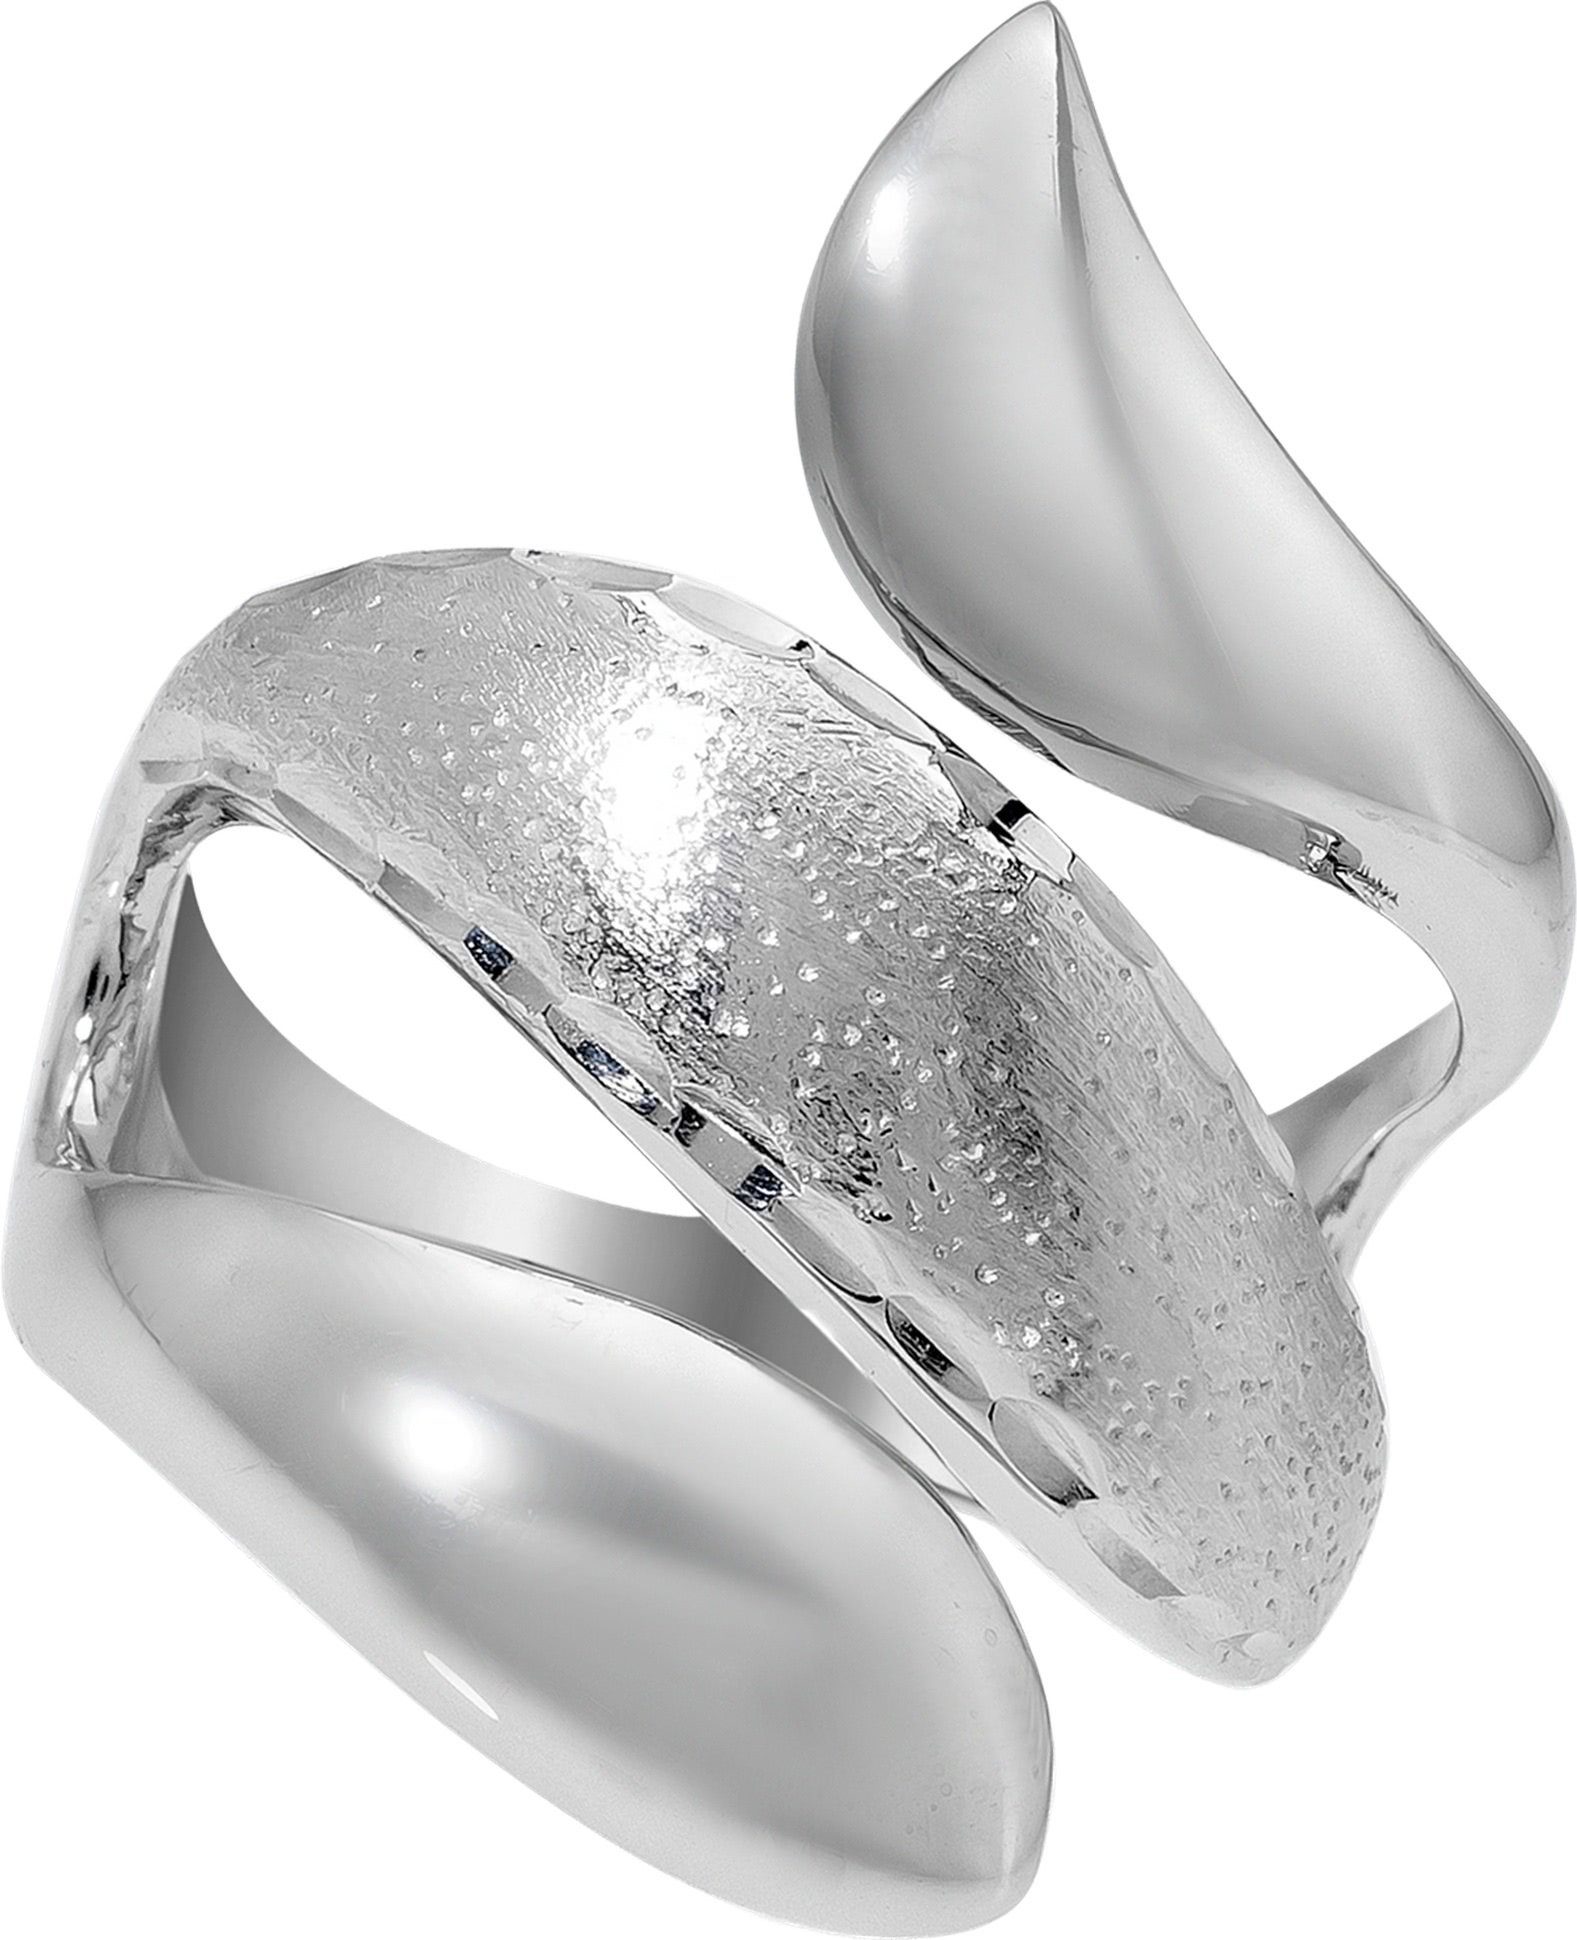 Balia Silberring Balia Ring für Damen mit diamantierter (Fingerring), Fingerring Größe 60 (19,1), 925 Sterling Silber (Schlange) Silber 925